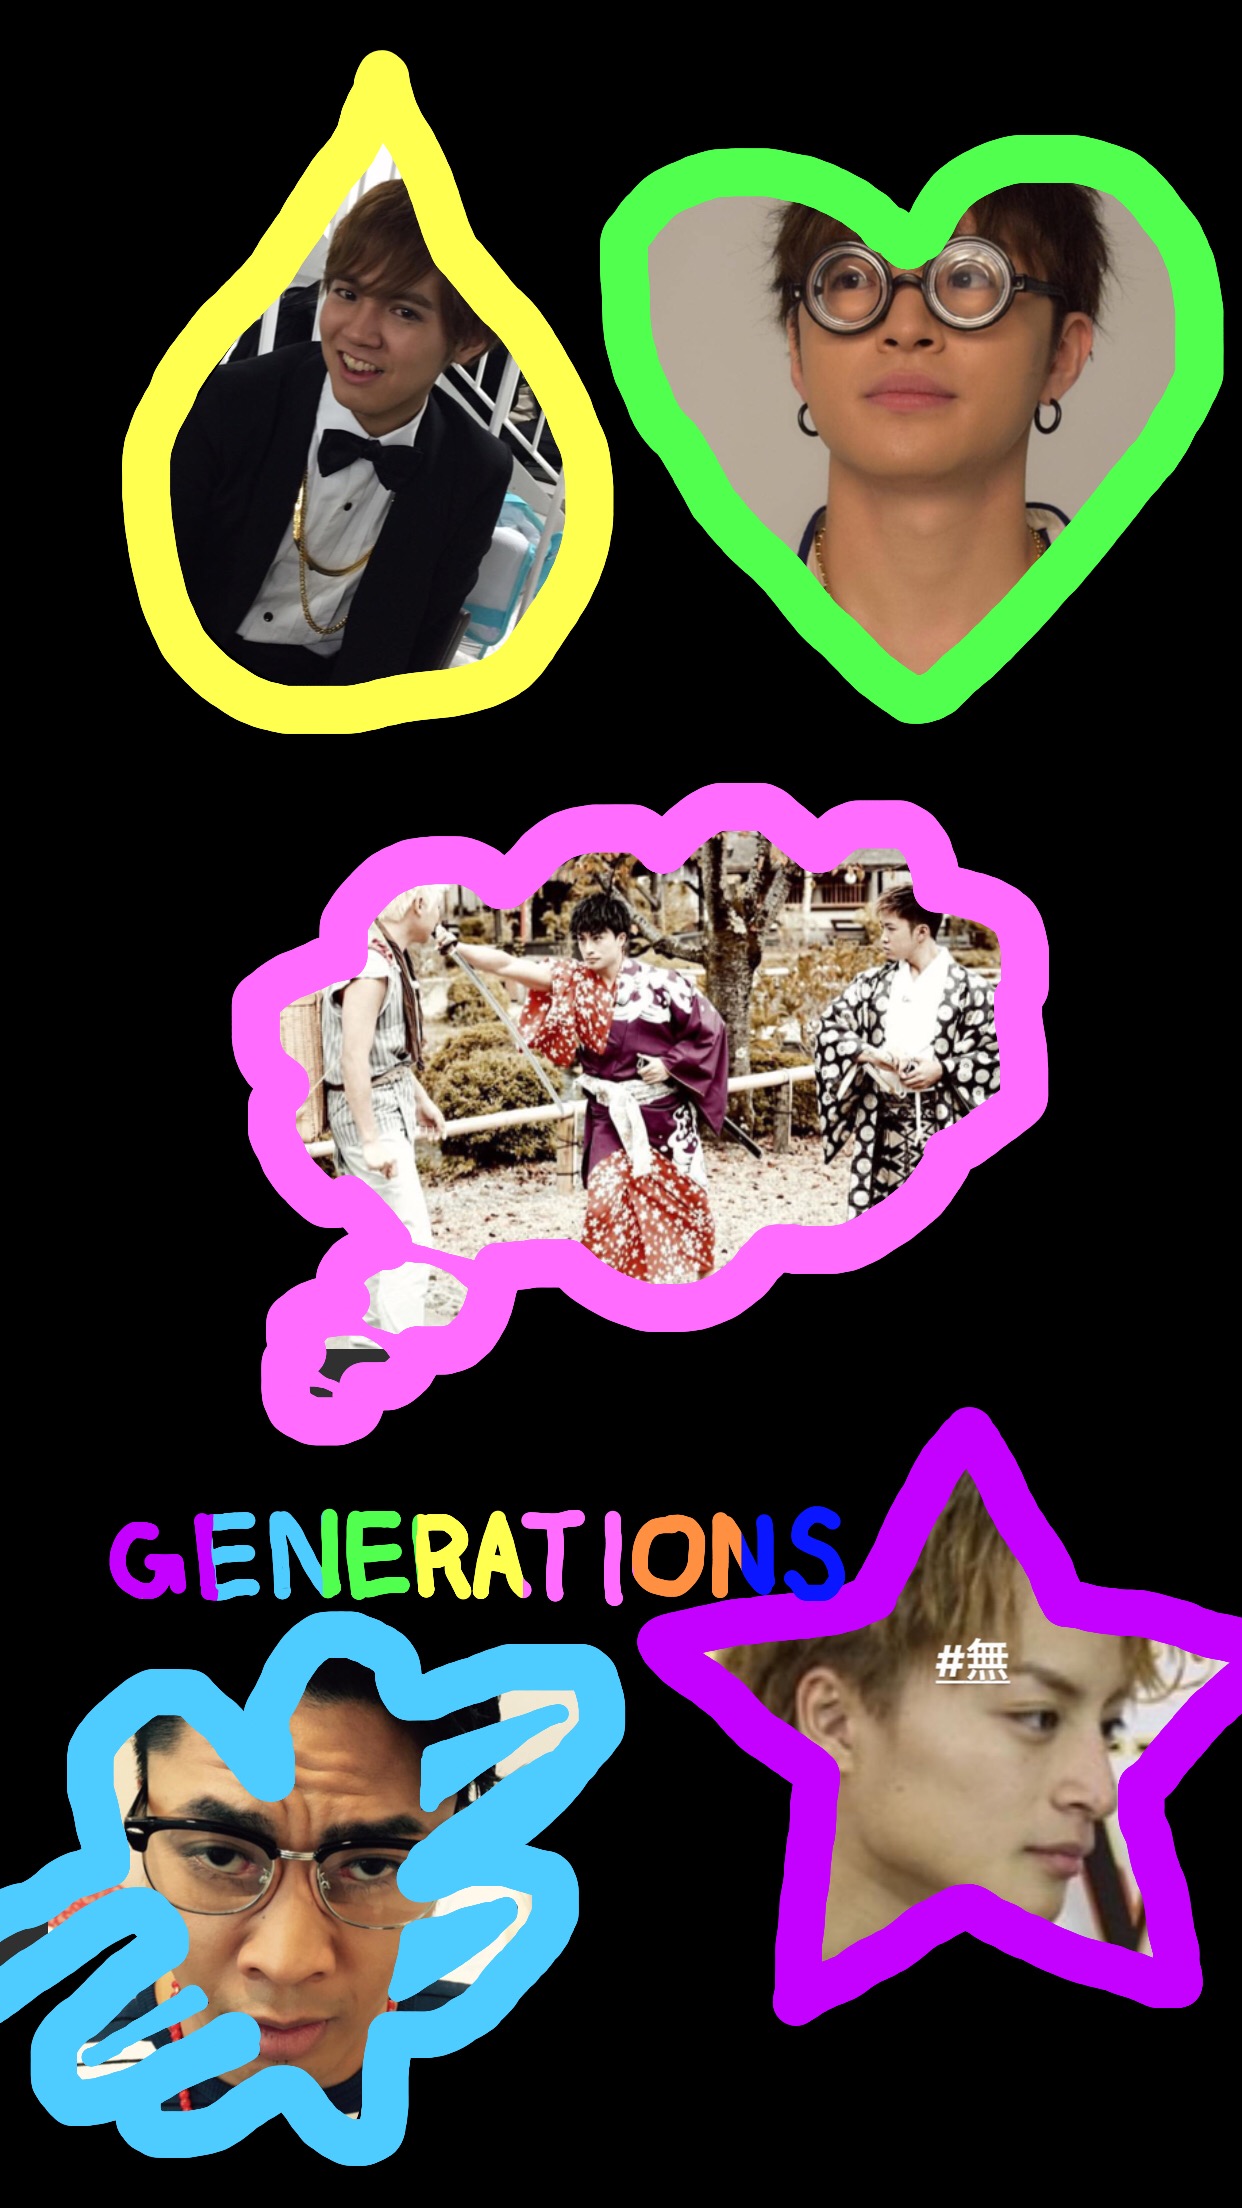 Generations 壁紙 Generations 壁紙 Image By Wankoro